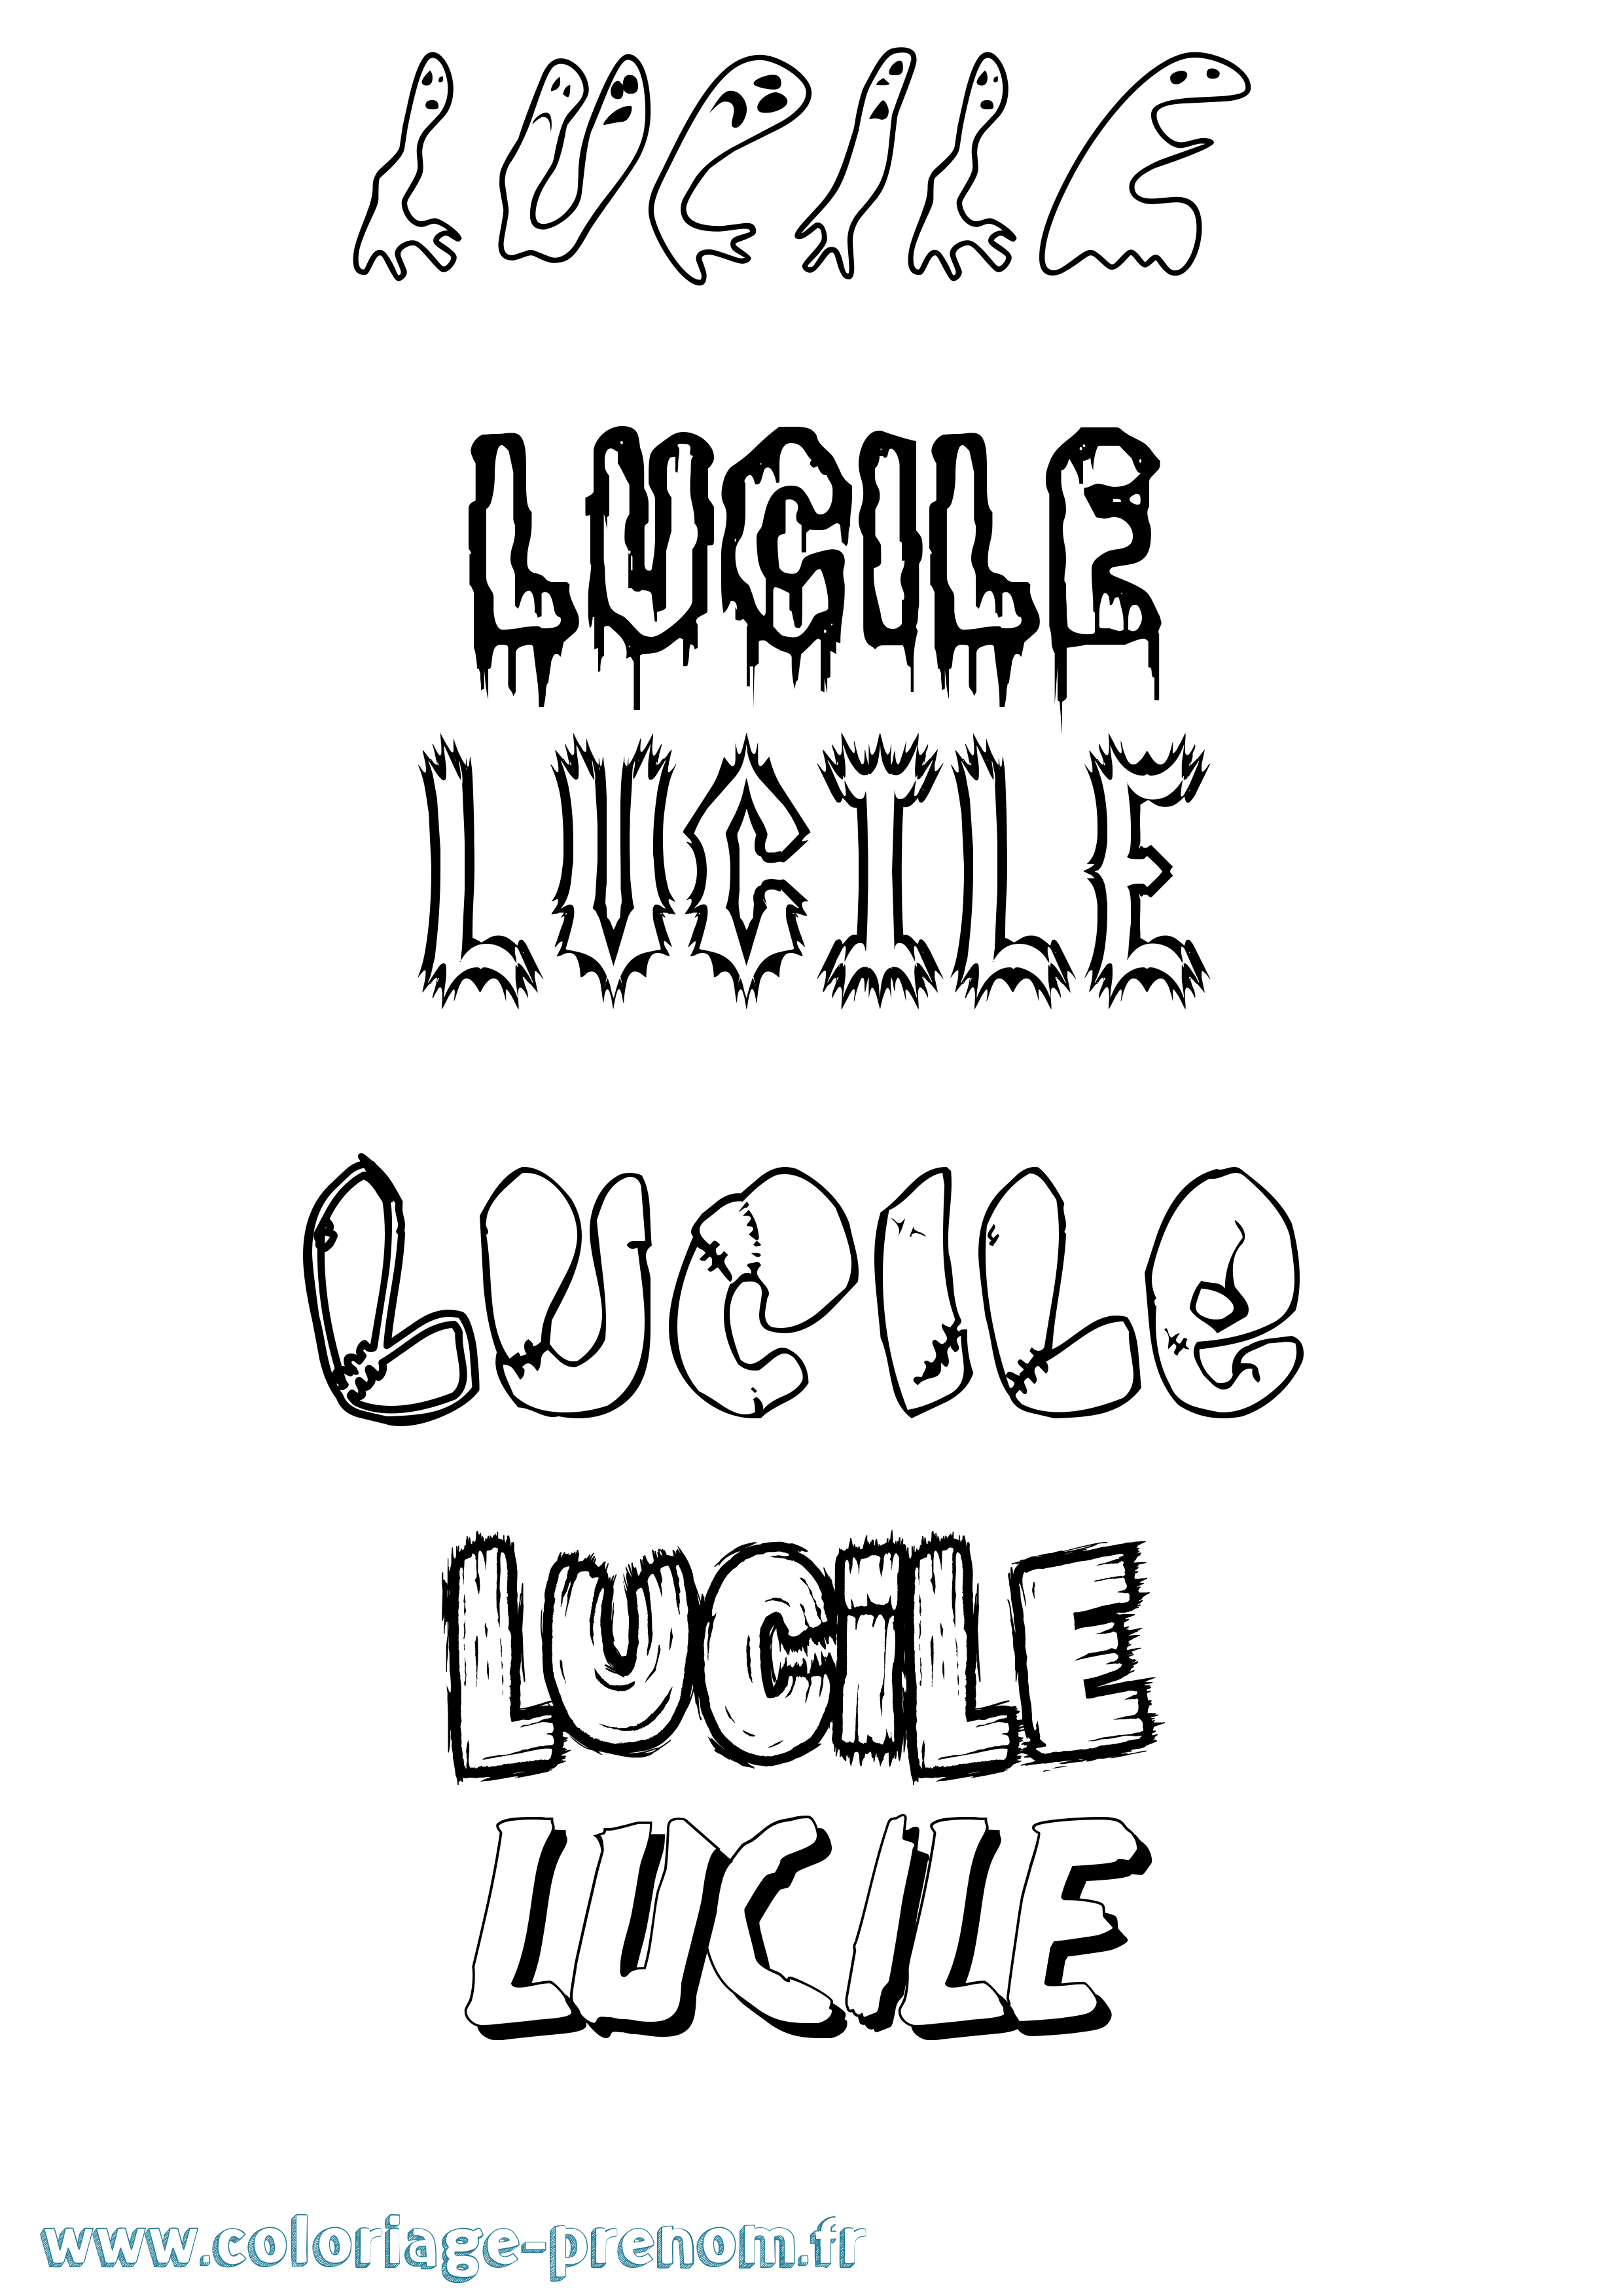 Coloriage prénom Lucile